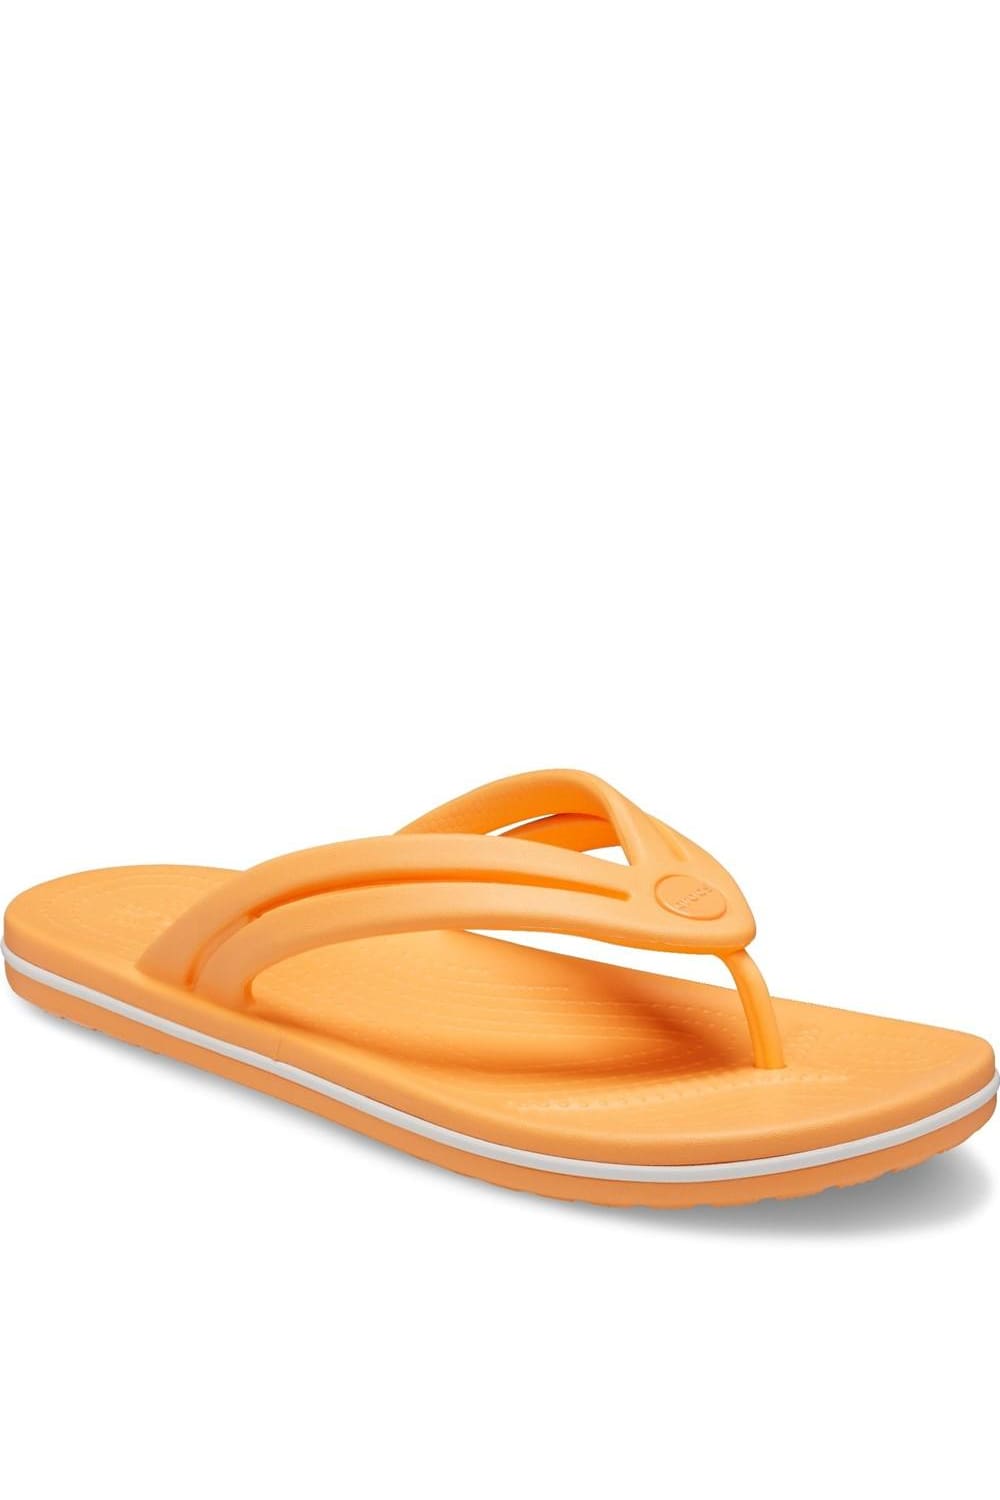 Womens/Ladies Crocband Flip Flops - Peach